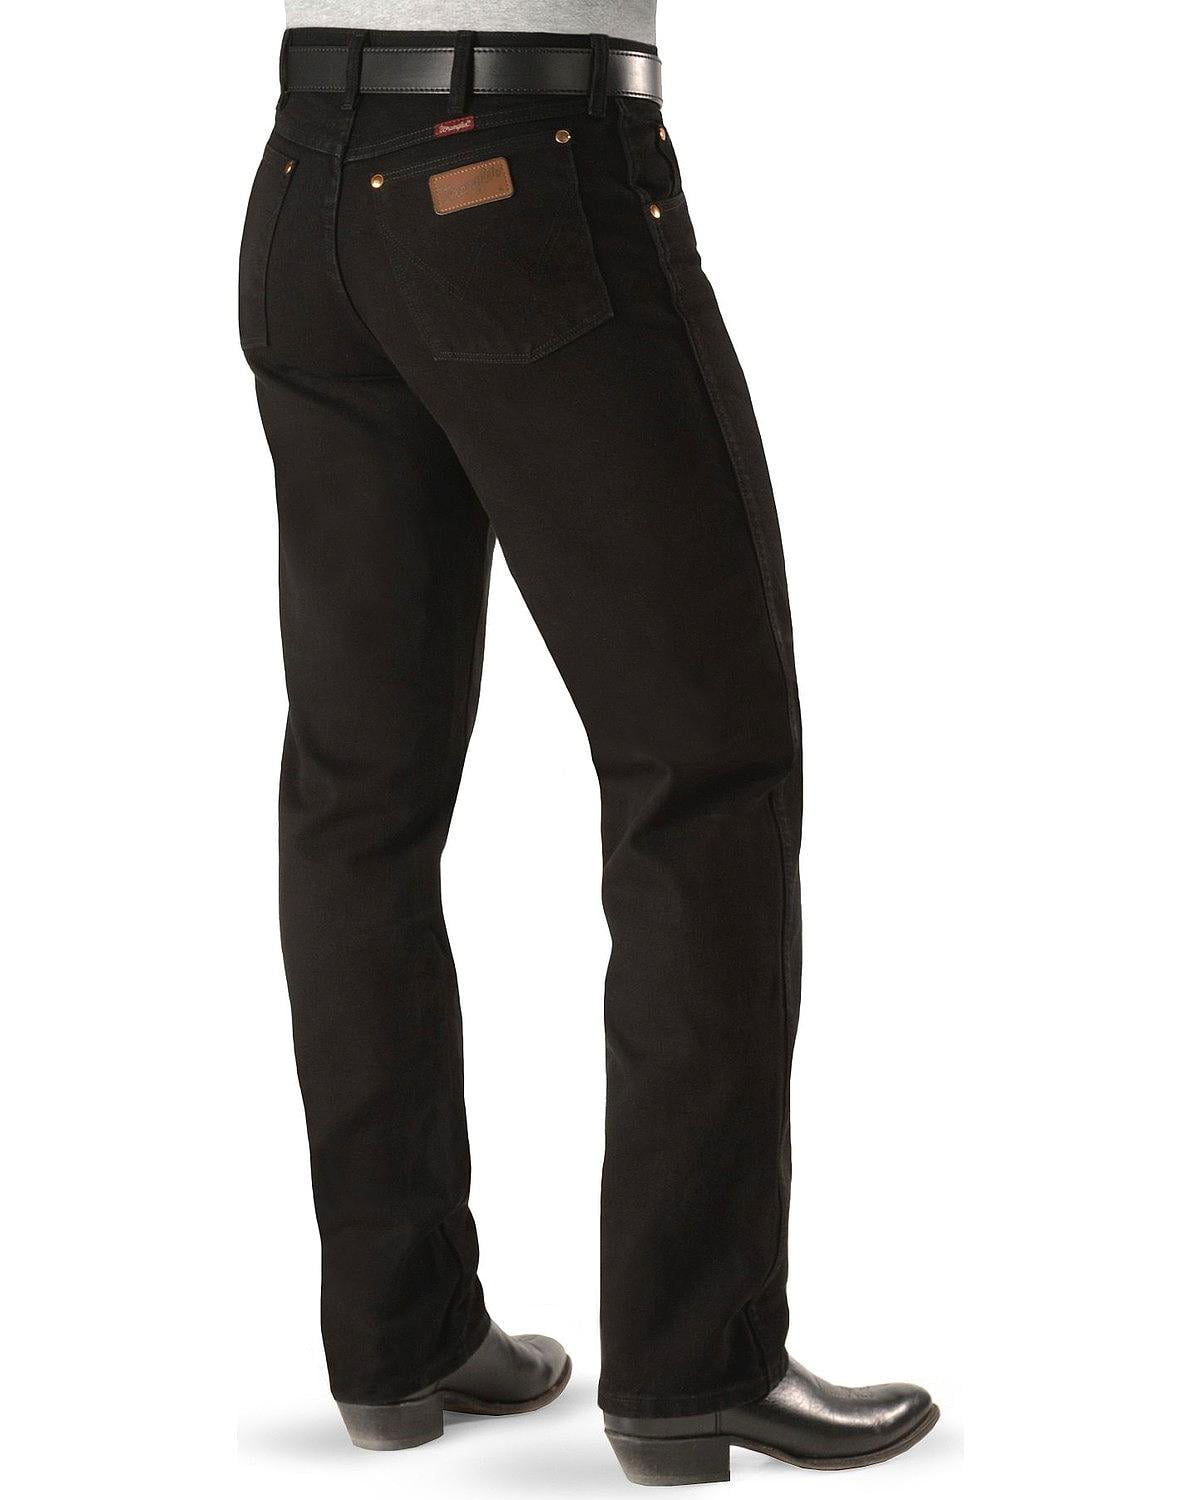 wrangler 13mwz black jeans